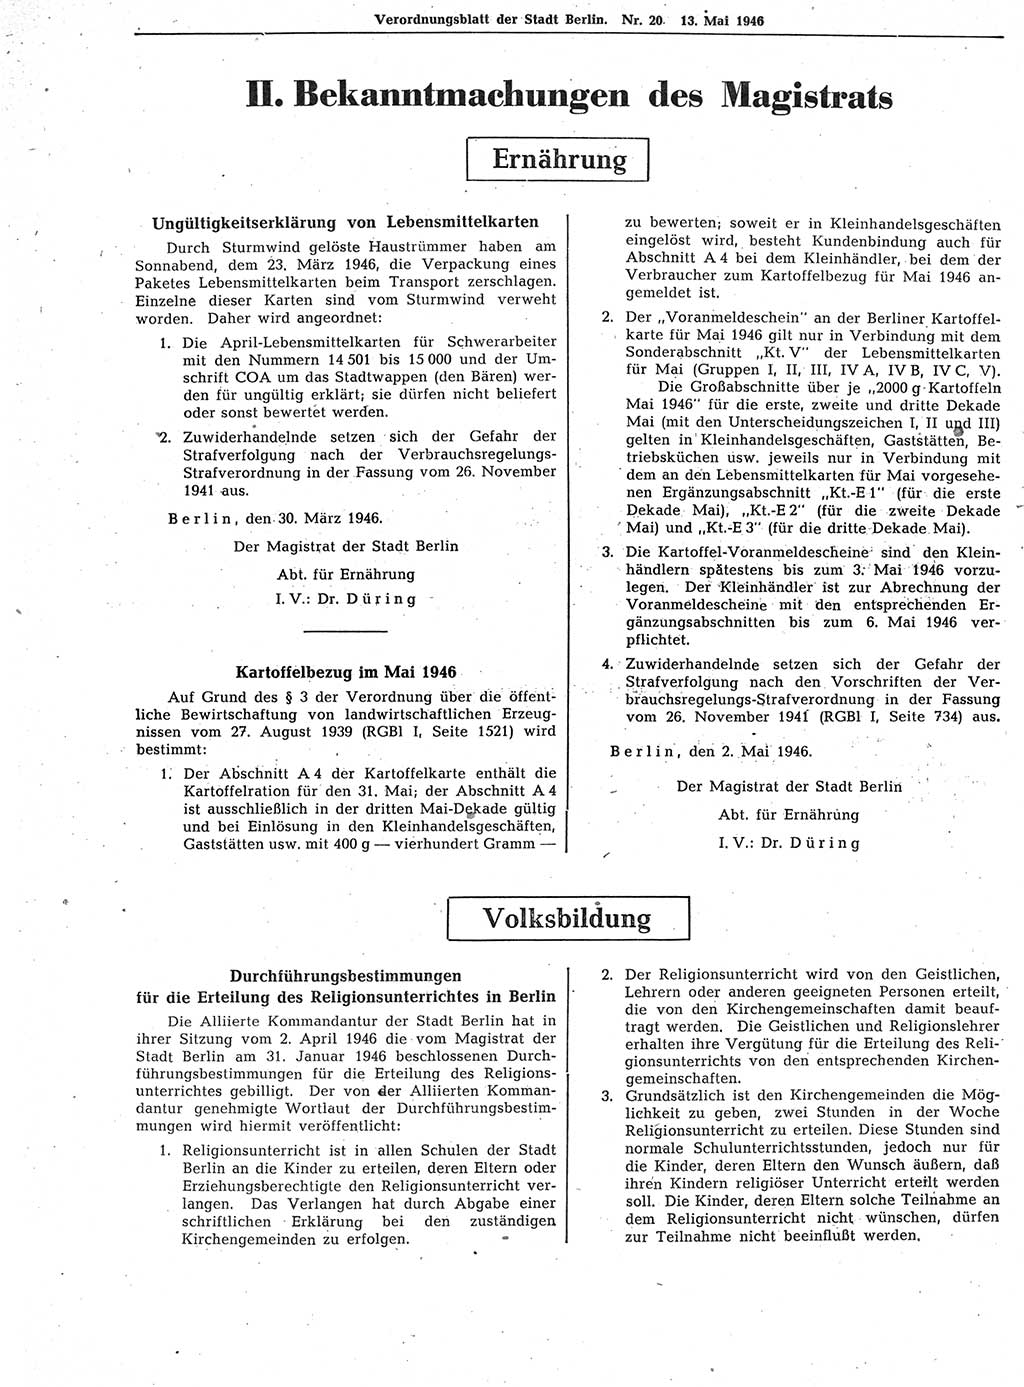 Verordnungsblatt (VOBl.) der Stadt Berlin, für Groß-Berlin 1946, Seite 154 (VOBl. Bln. 1946, S. 154)